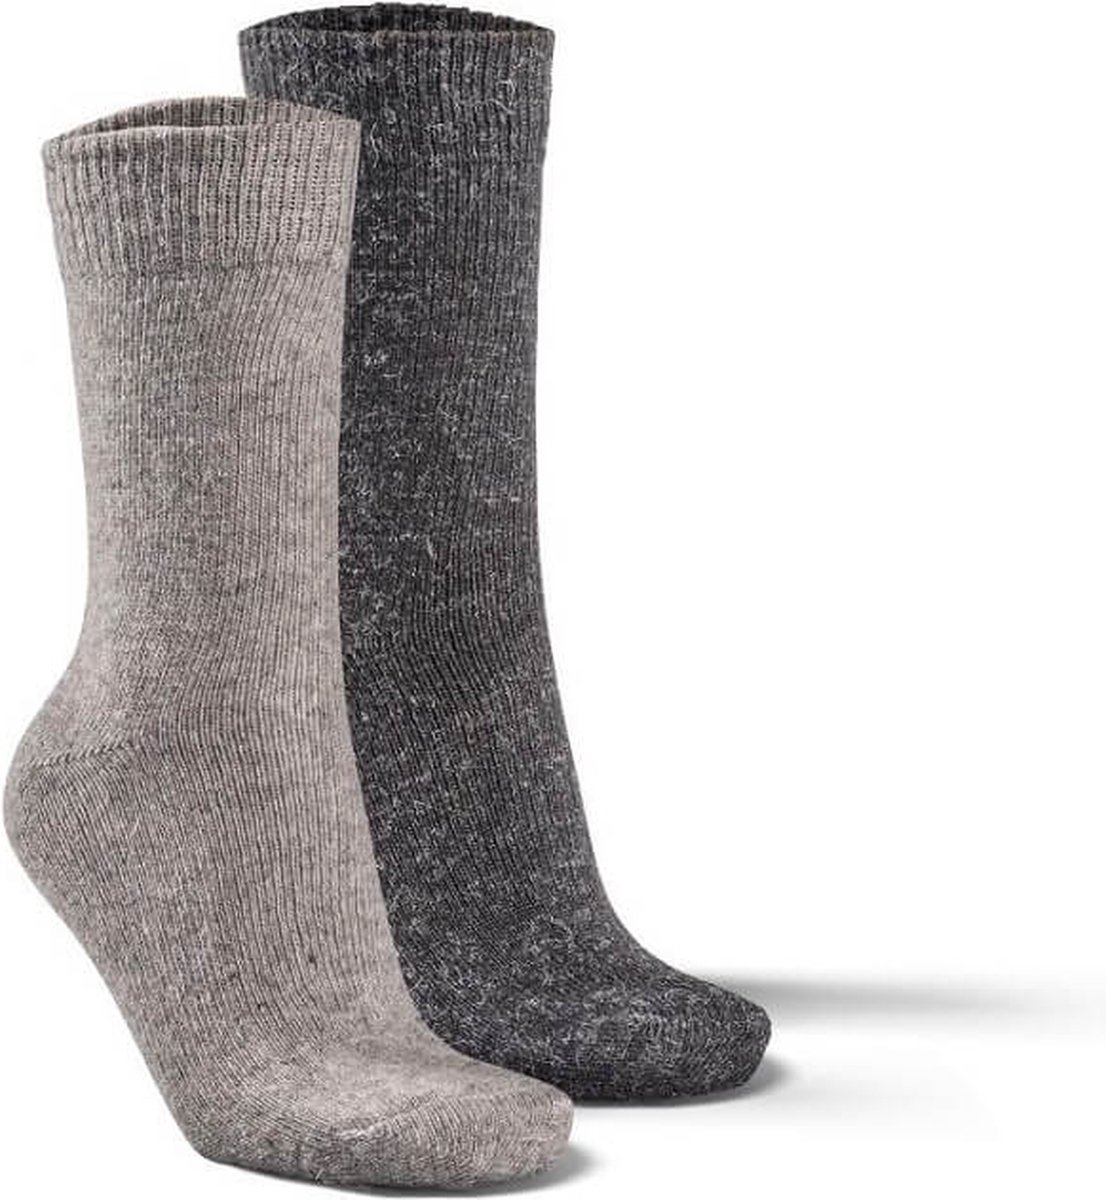 Fellhof Alpaca sokken maat 43-46 – grijs/antraciet – alpacawol – wollen sokken – warme sokken temperatuurregulerend – vochtregulerend – geurloos – ademend – comfortabel – zacht